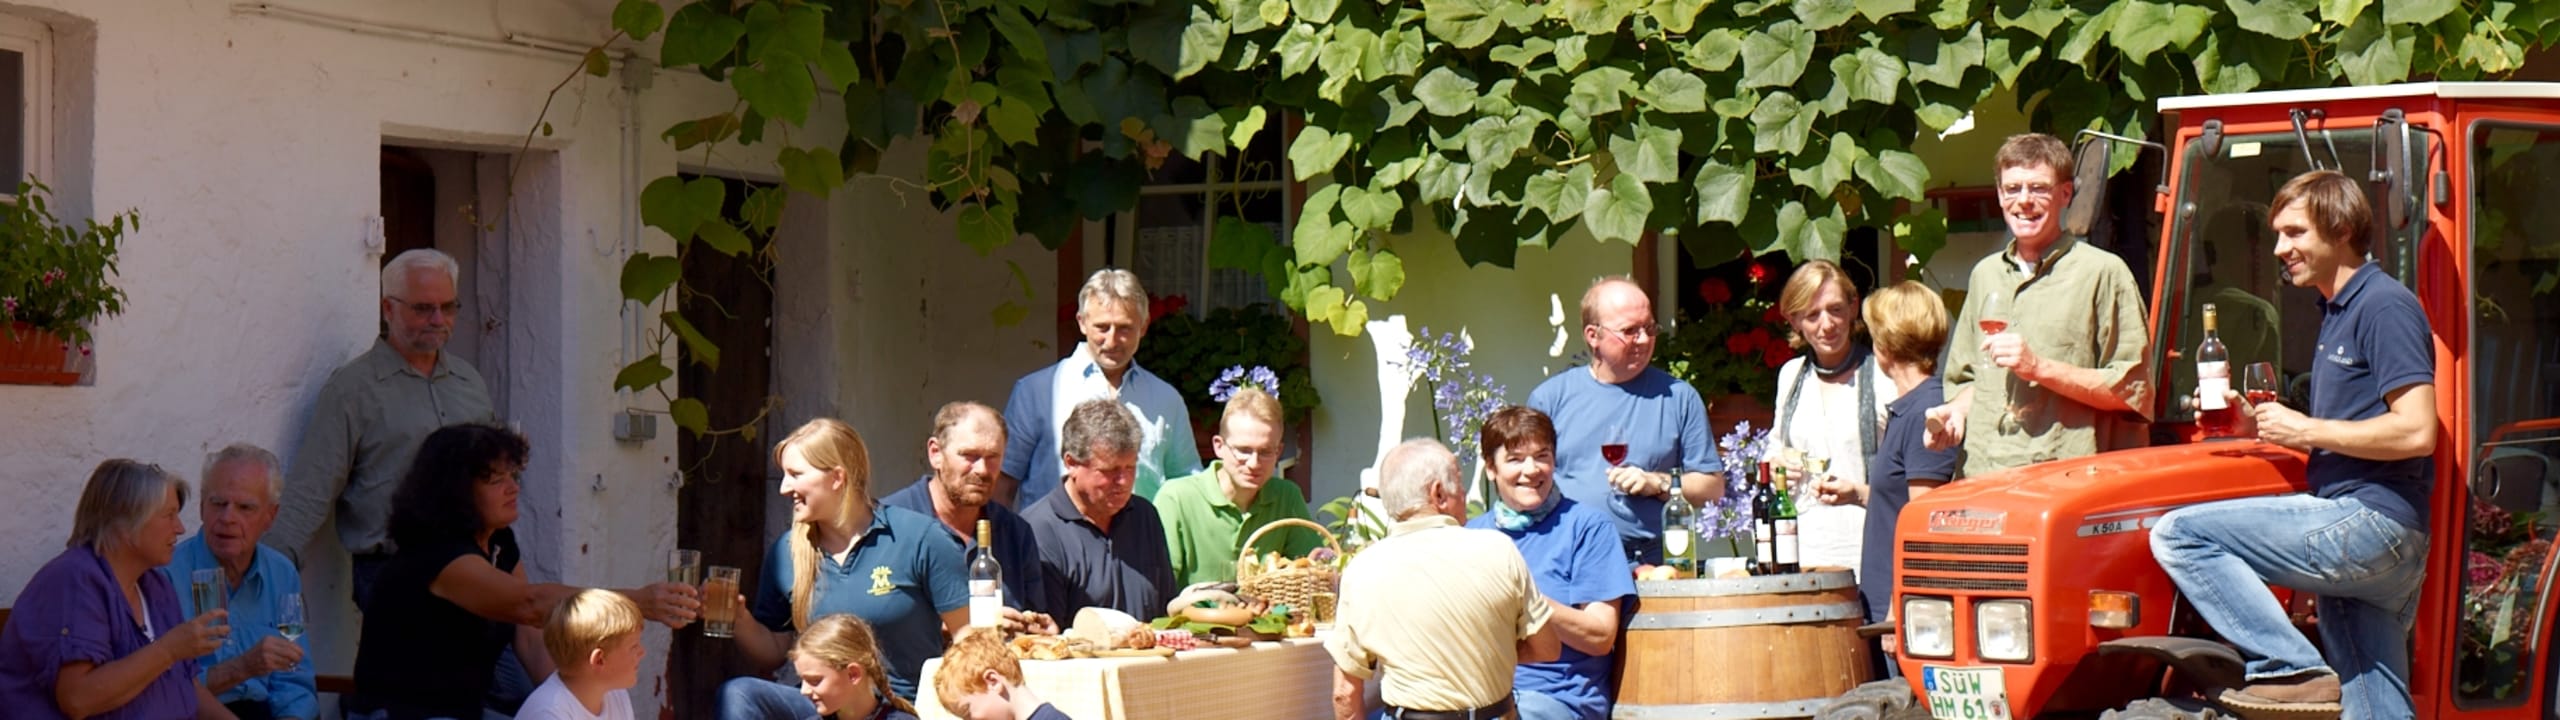 Weingenossenschaft Rietburg